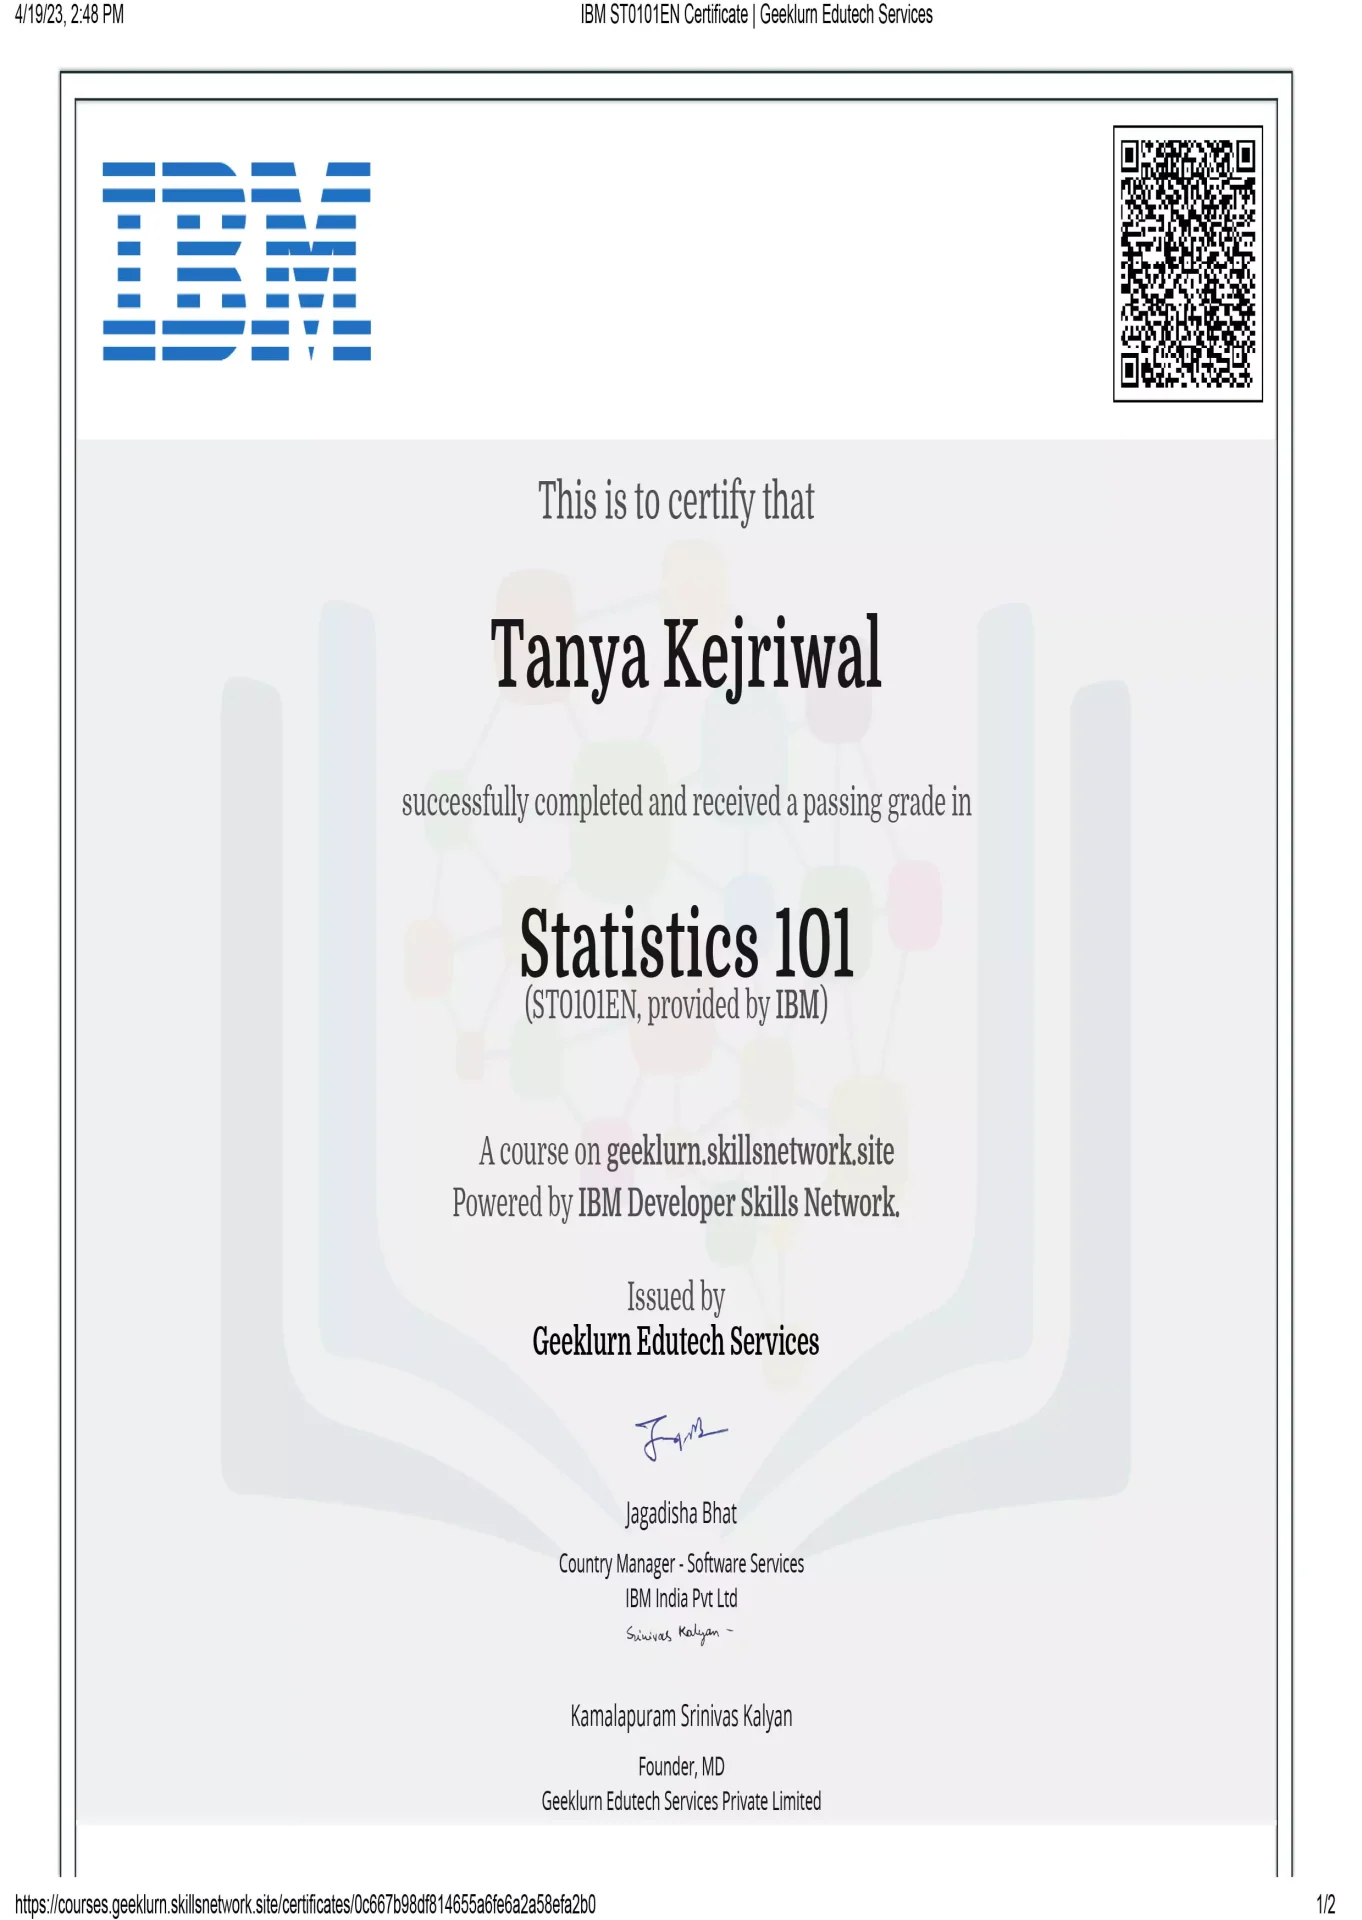 ibm-st0101en-certificate-geeklurn-edutech-services-3